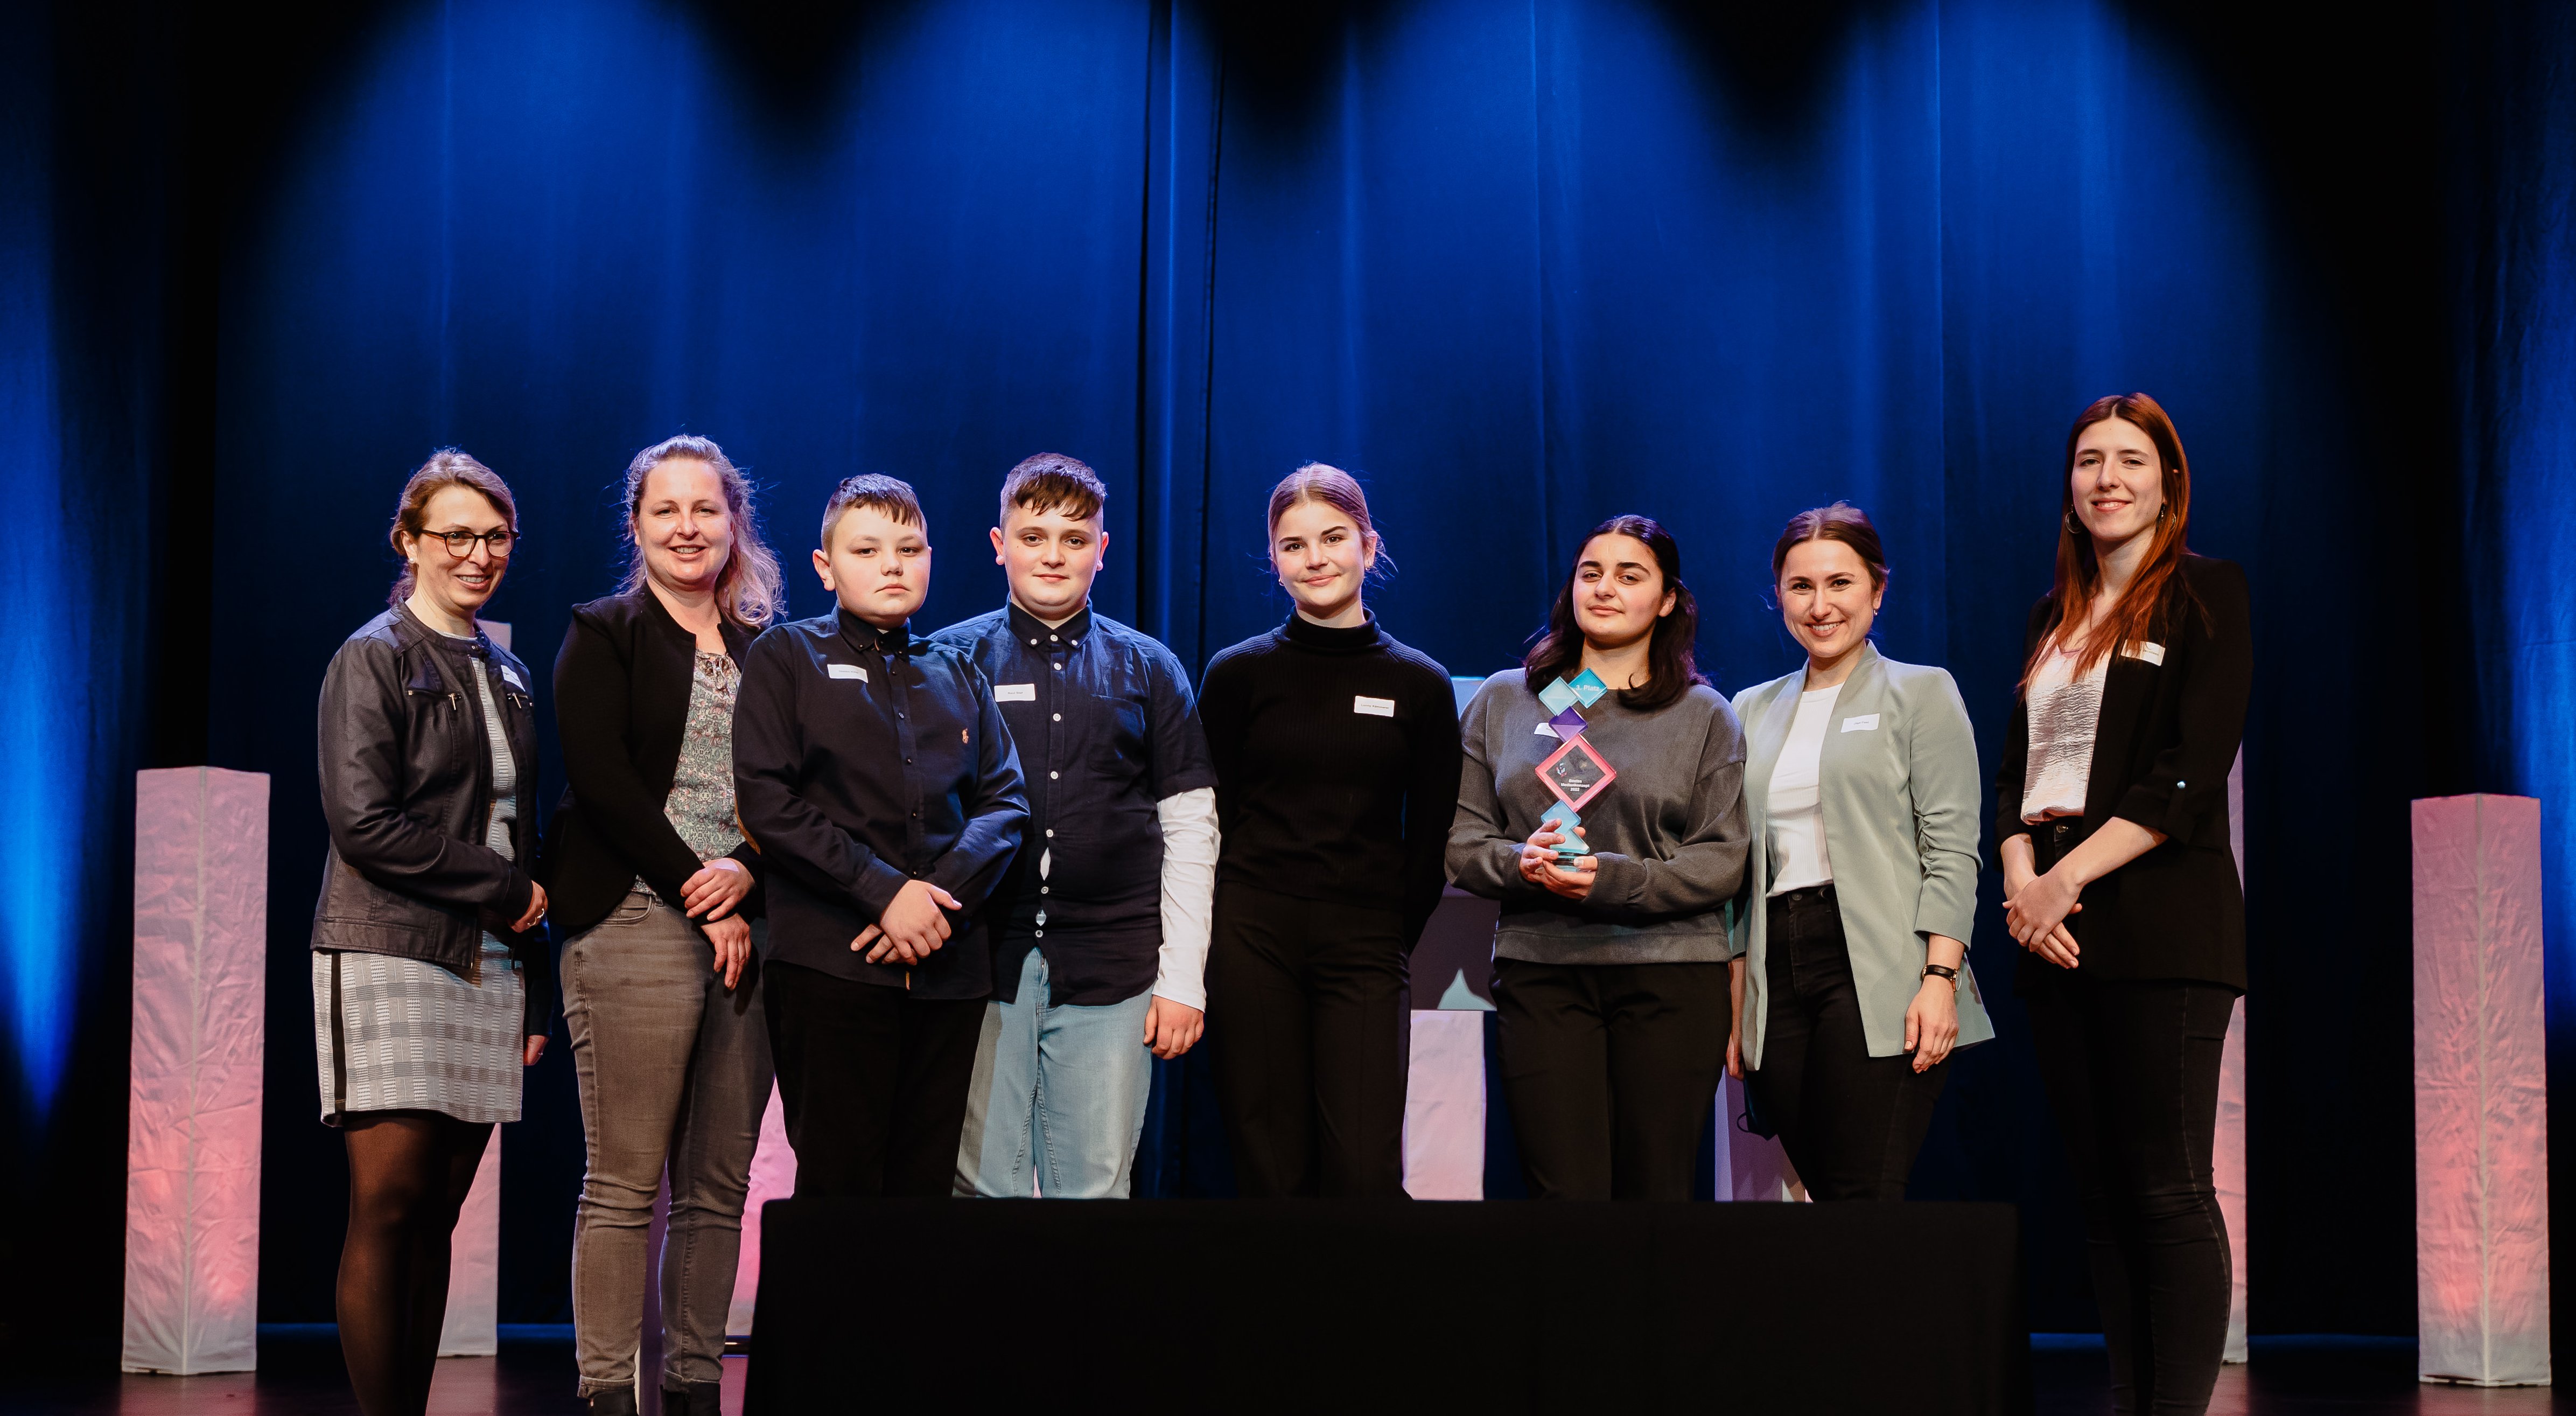 Die Dannewerkschule aus Schleswig in Schleswig-Holstein gewann den 3. Preis beim Schulpreis der Dieter Schwarz Stiftung